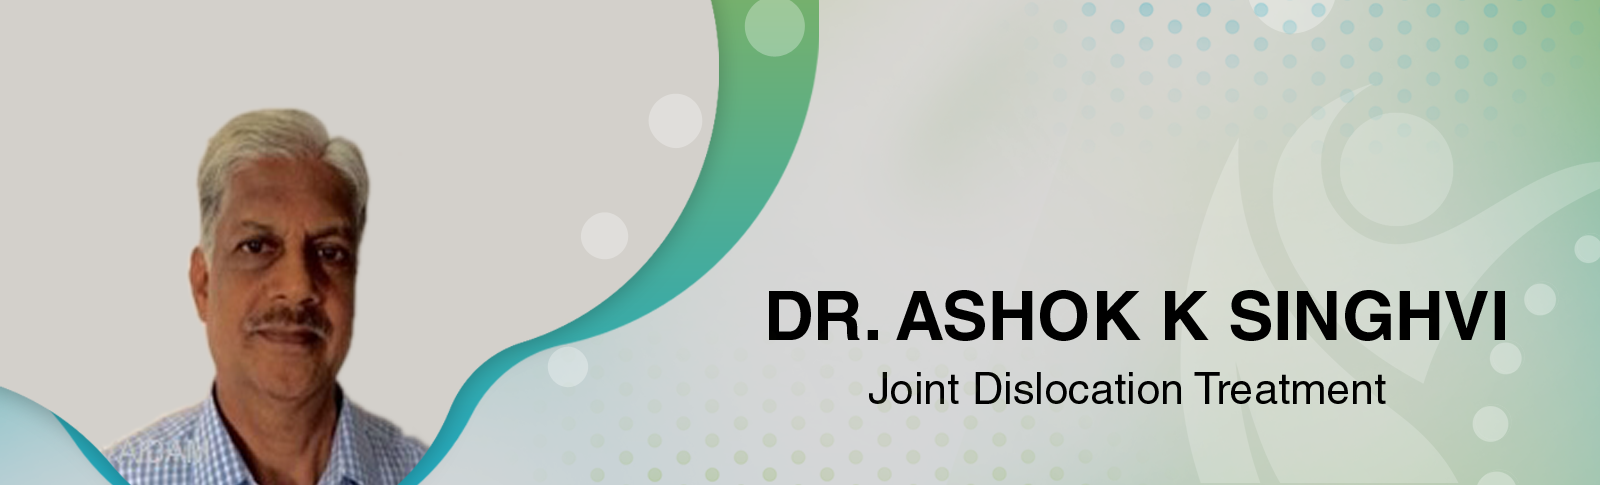 Dr. Ashok K Singhvi